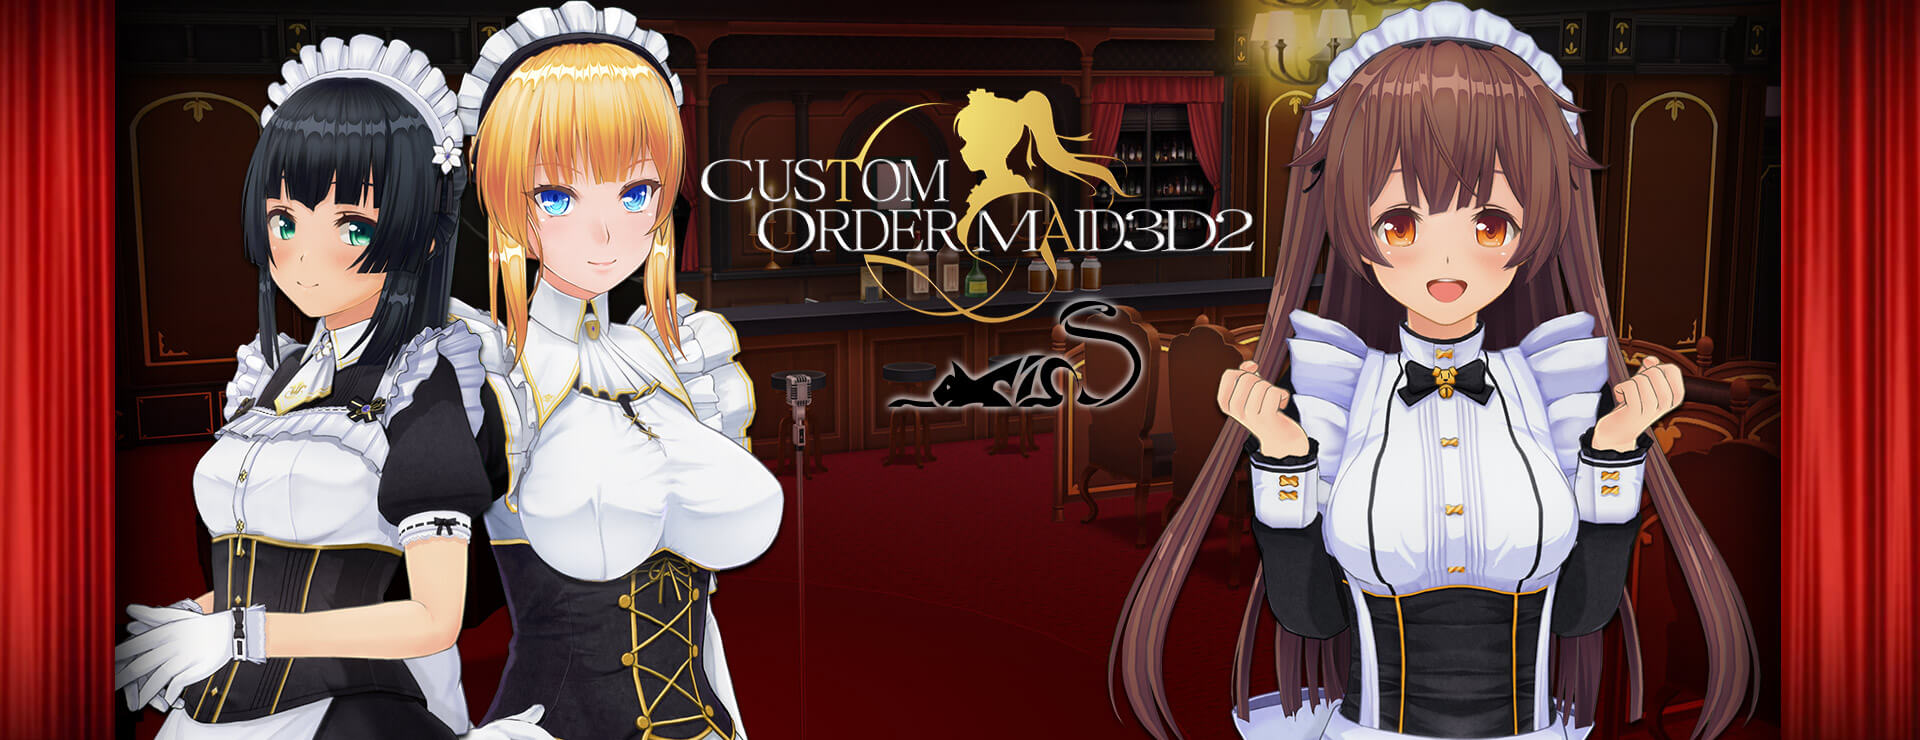 Custom Order Maid 3D2 Game - Simulación Juego